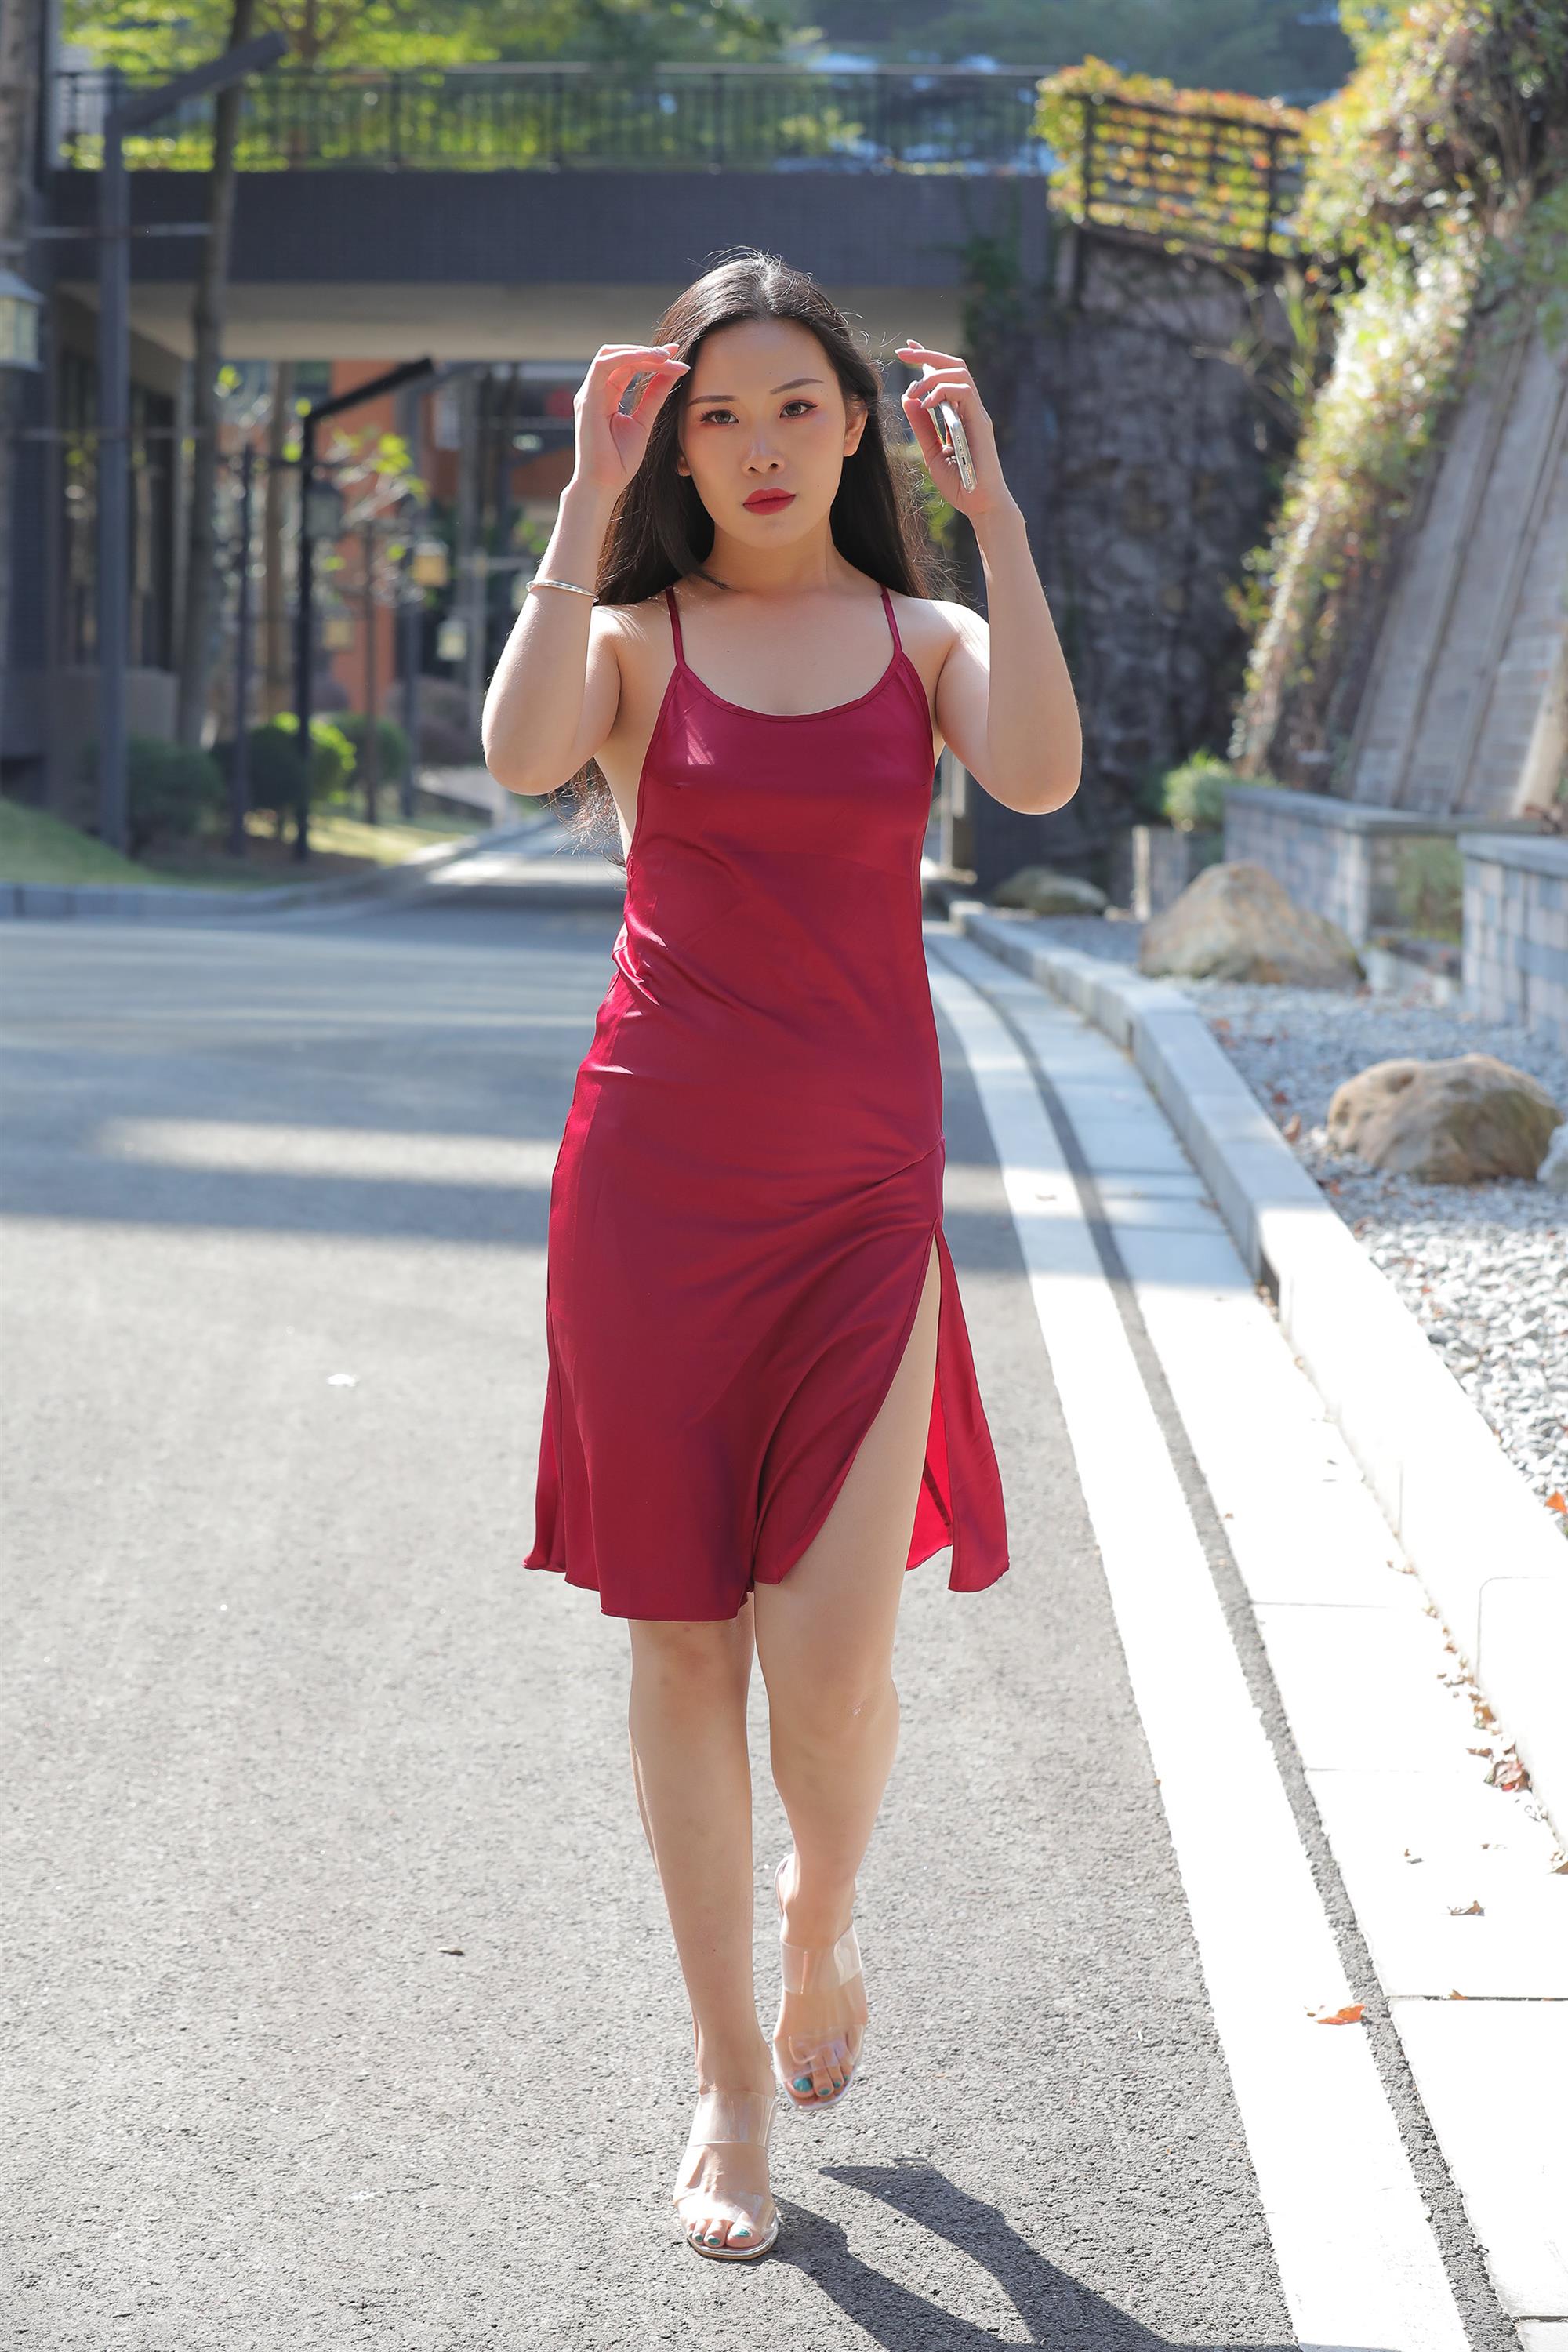 Street beauty in a red dress - 4.jpg